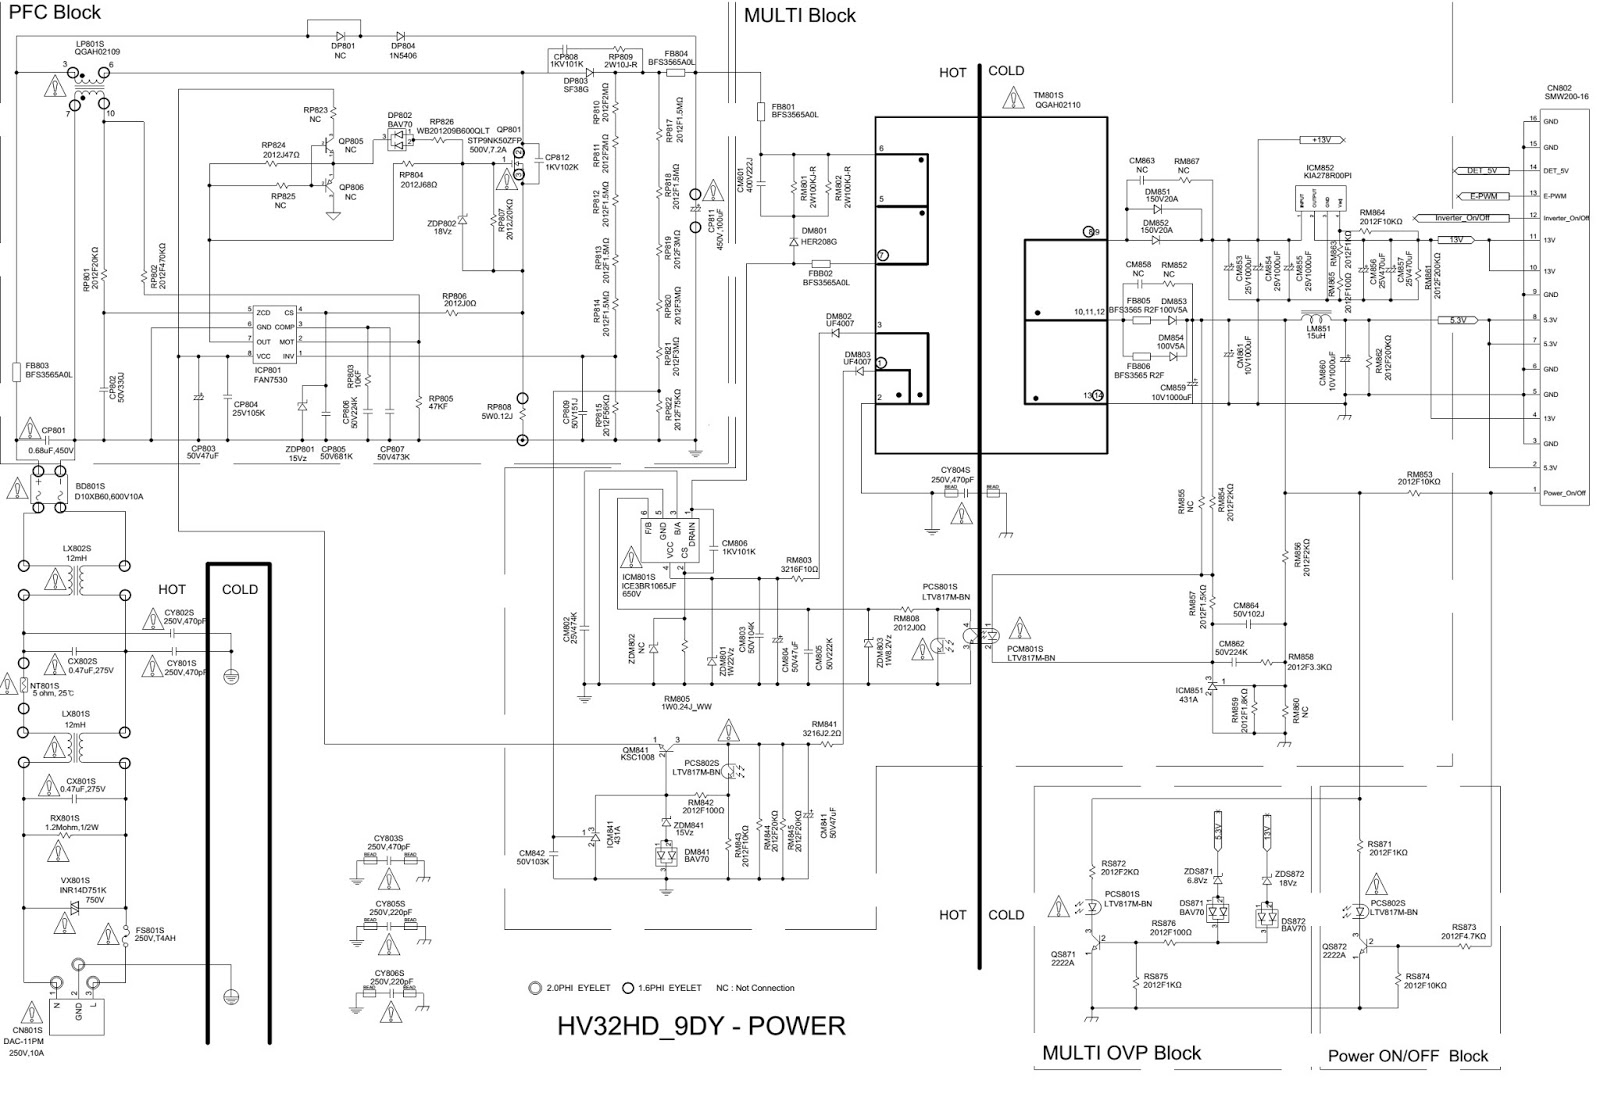 Samsung Wf45k6200aw/a2 Wiring Diagram